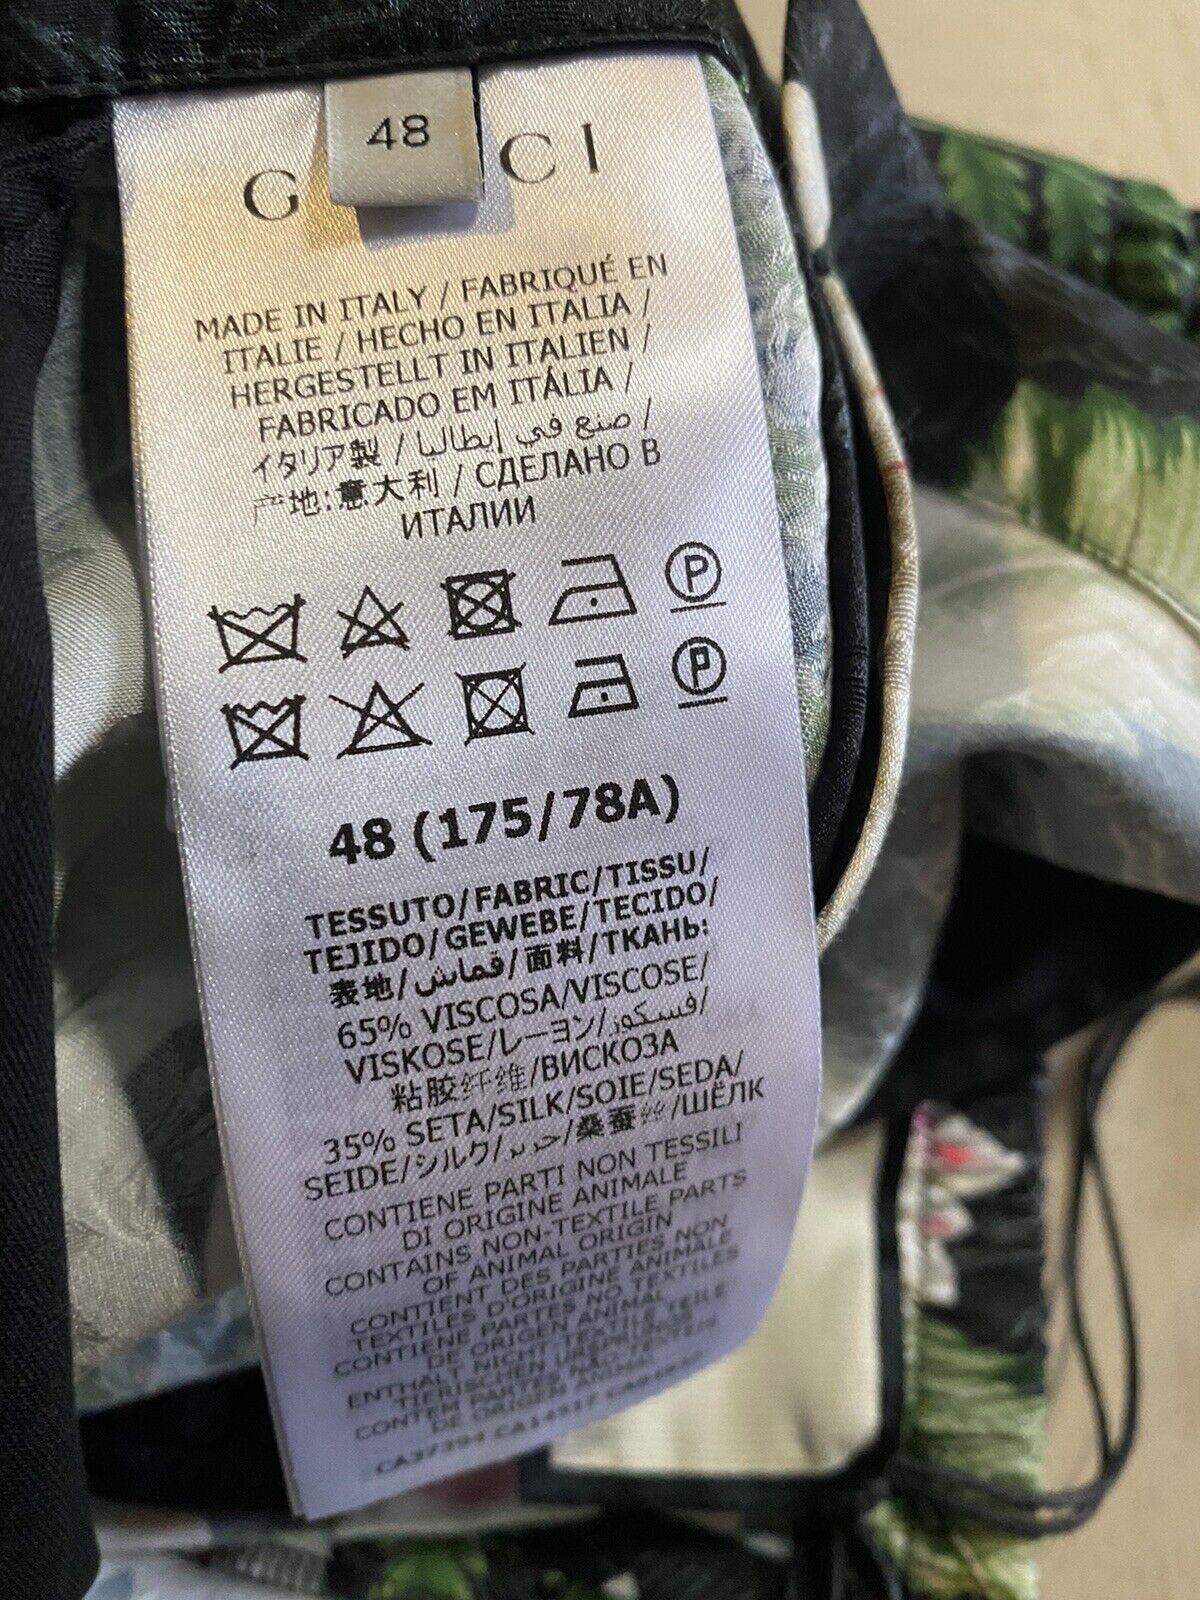 Мужские шорты Gucci Soul Monogram за 980 долларов NWT, черные/зеленые/мульти, 32 США/48